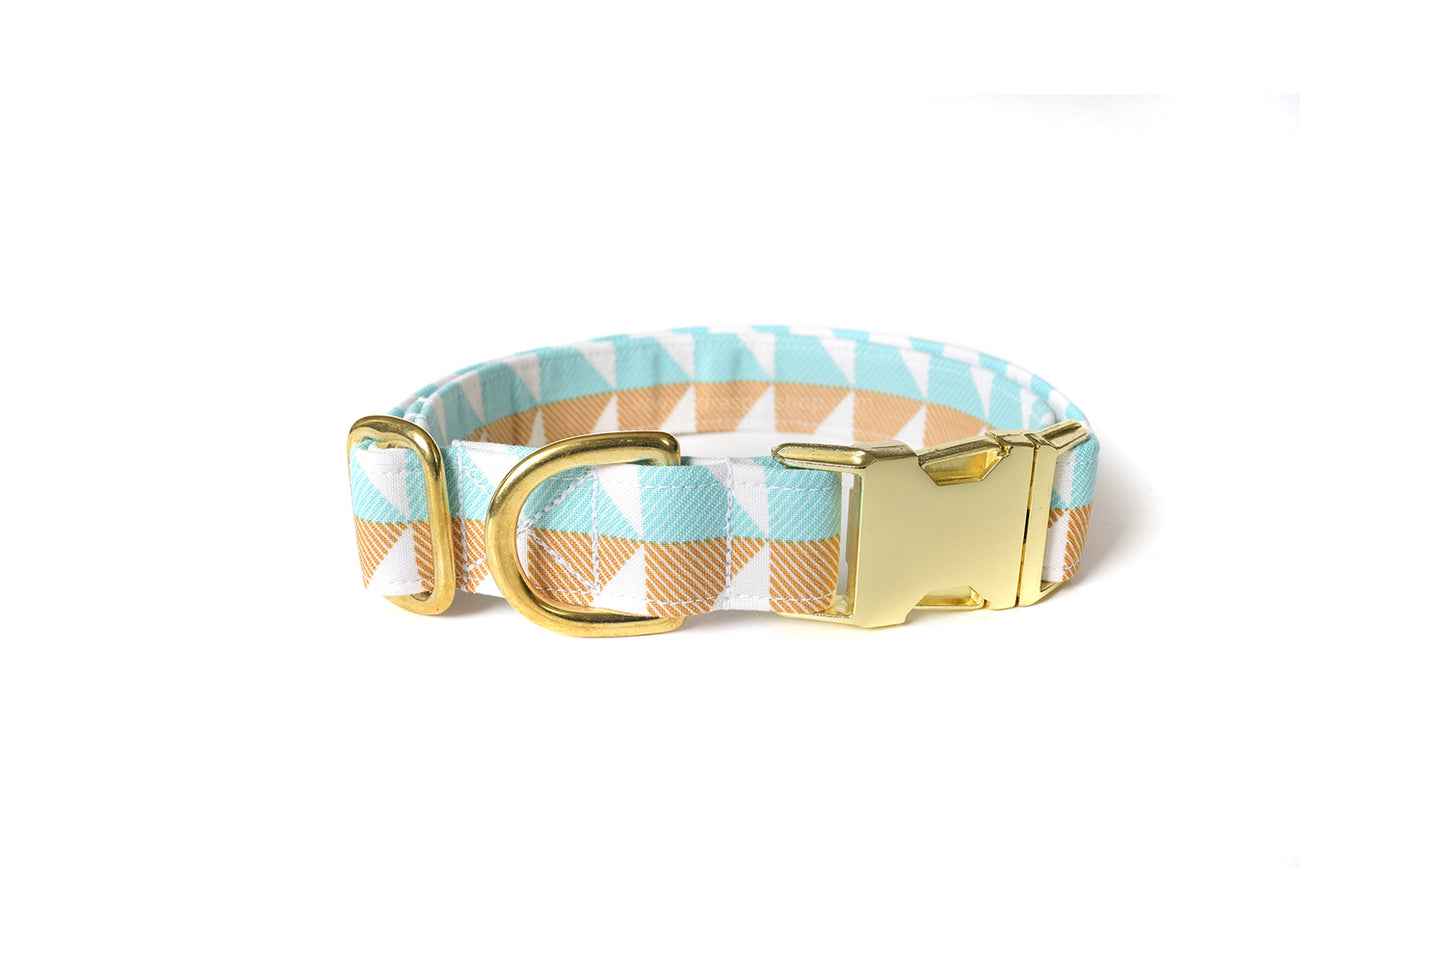 Modern Light Blue & Gold Dog Collar - Handmade by Kira's Pet Shop